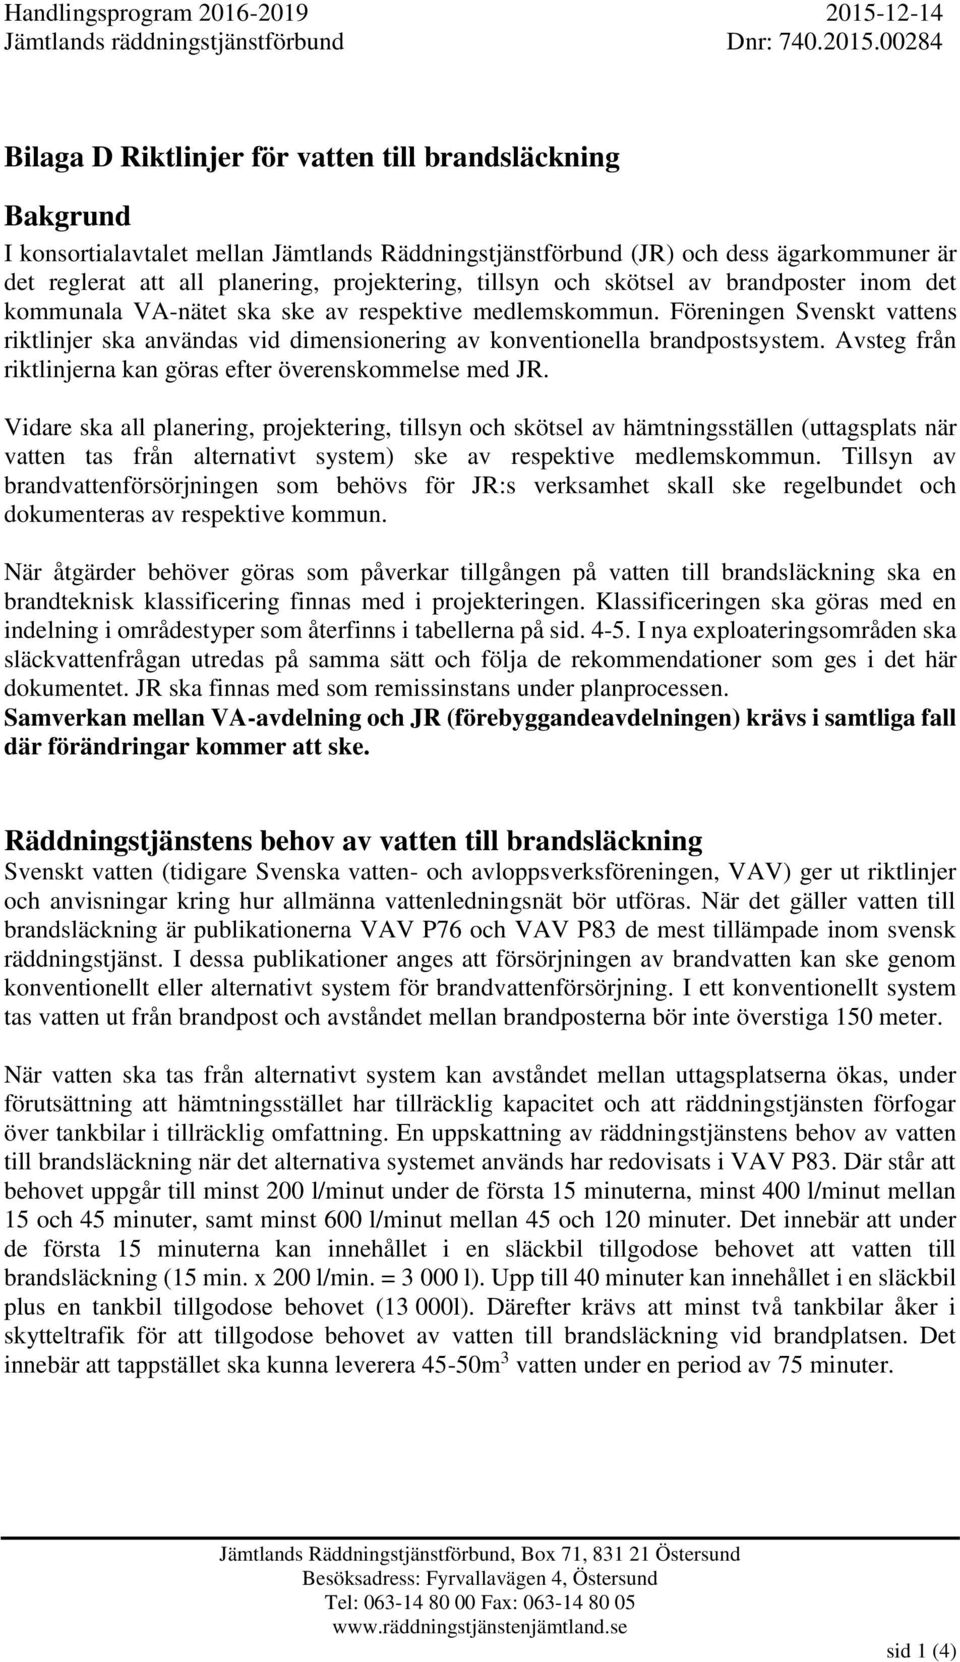 Föreningen Svenskt vattens riktlinjer ska användas vid dimensionering av konventionella brandpostsystem. Avsteg från riktlinjerna kan göras efter överenskommelse med JR.